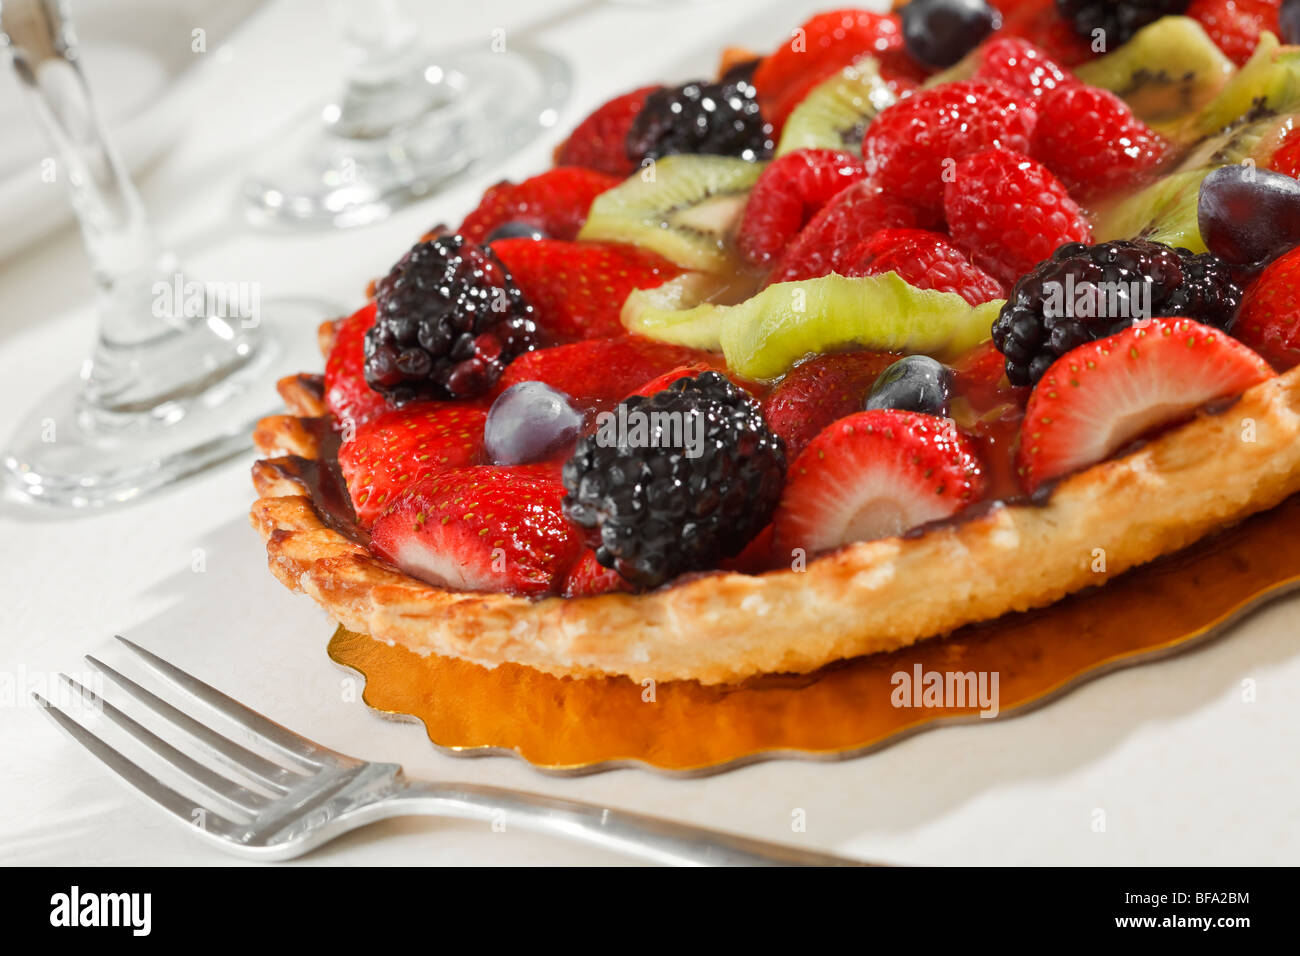 Tarte aux fruits avec des fraises, raisins, kiwis et Boysenberries. Banque D'Images